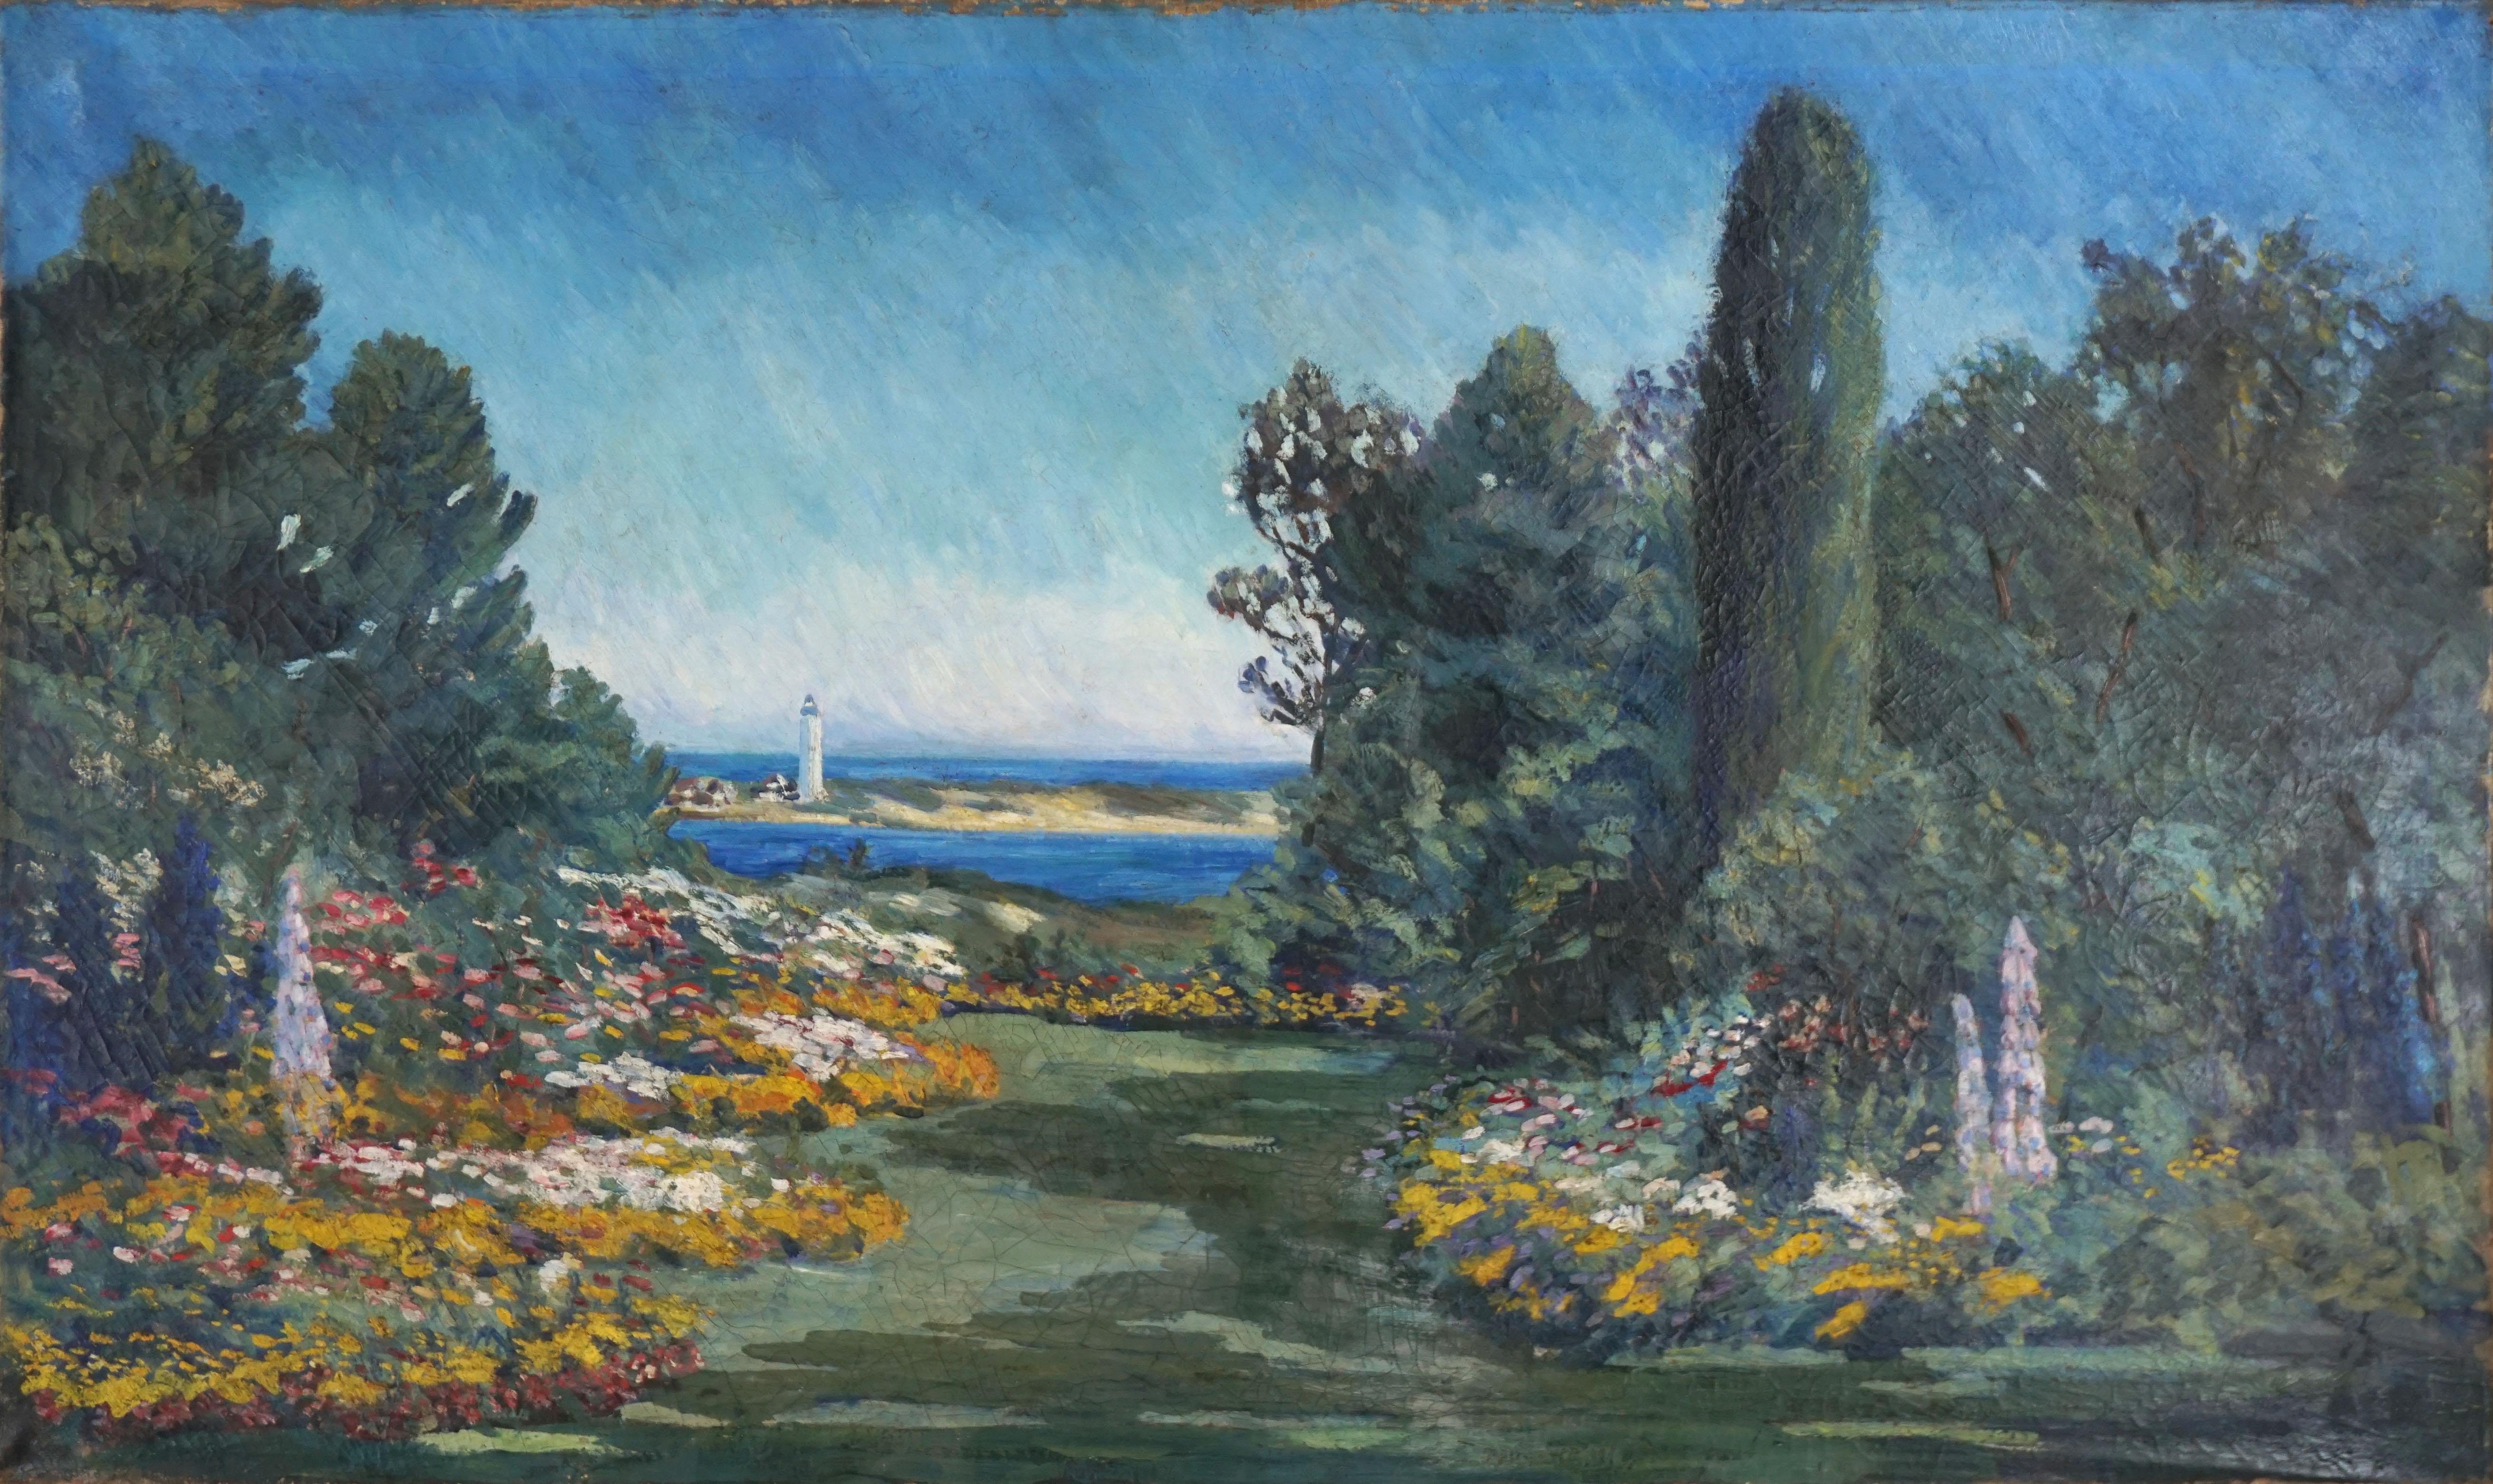 Landscape Painting 19th century American School - Paysage de jardin et de phare de grande envergure de l'impressionnisme américain du 19e siècle